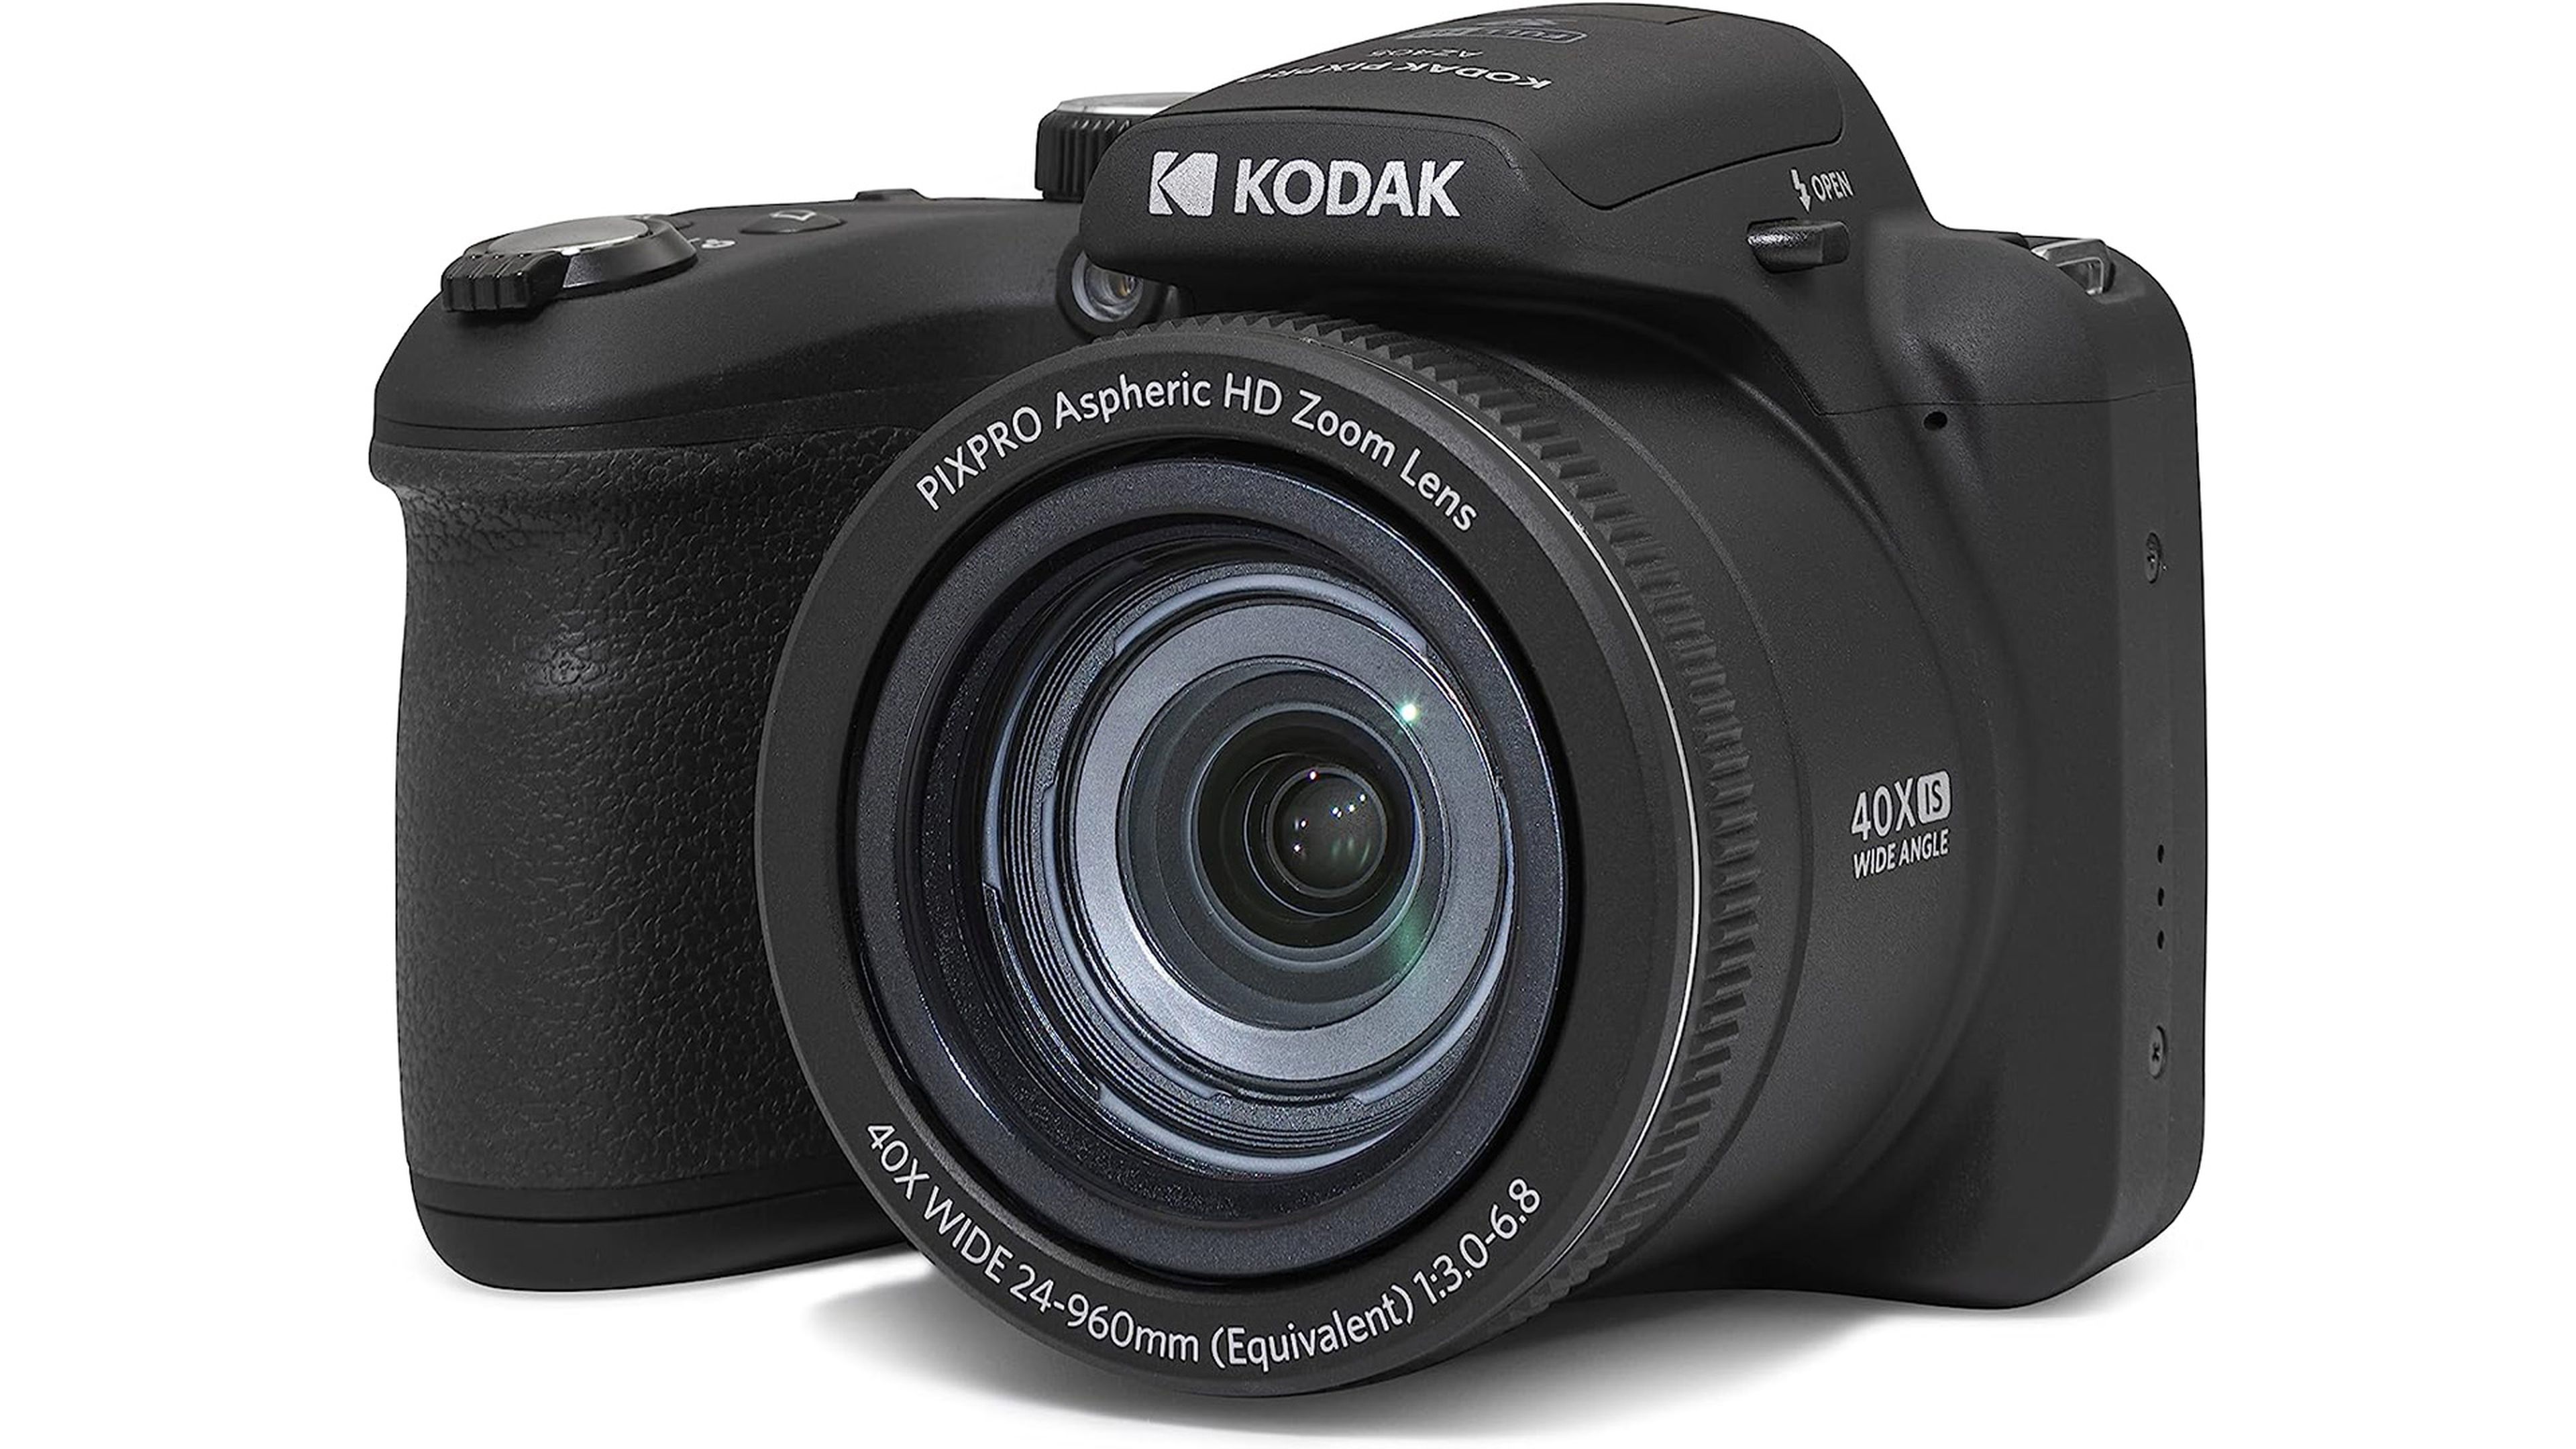 Nikon D3100: Érase una Vez la Mejor Cámara Para Principiantes